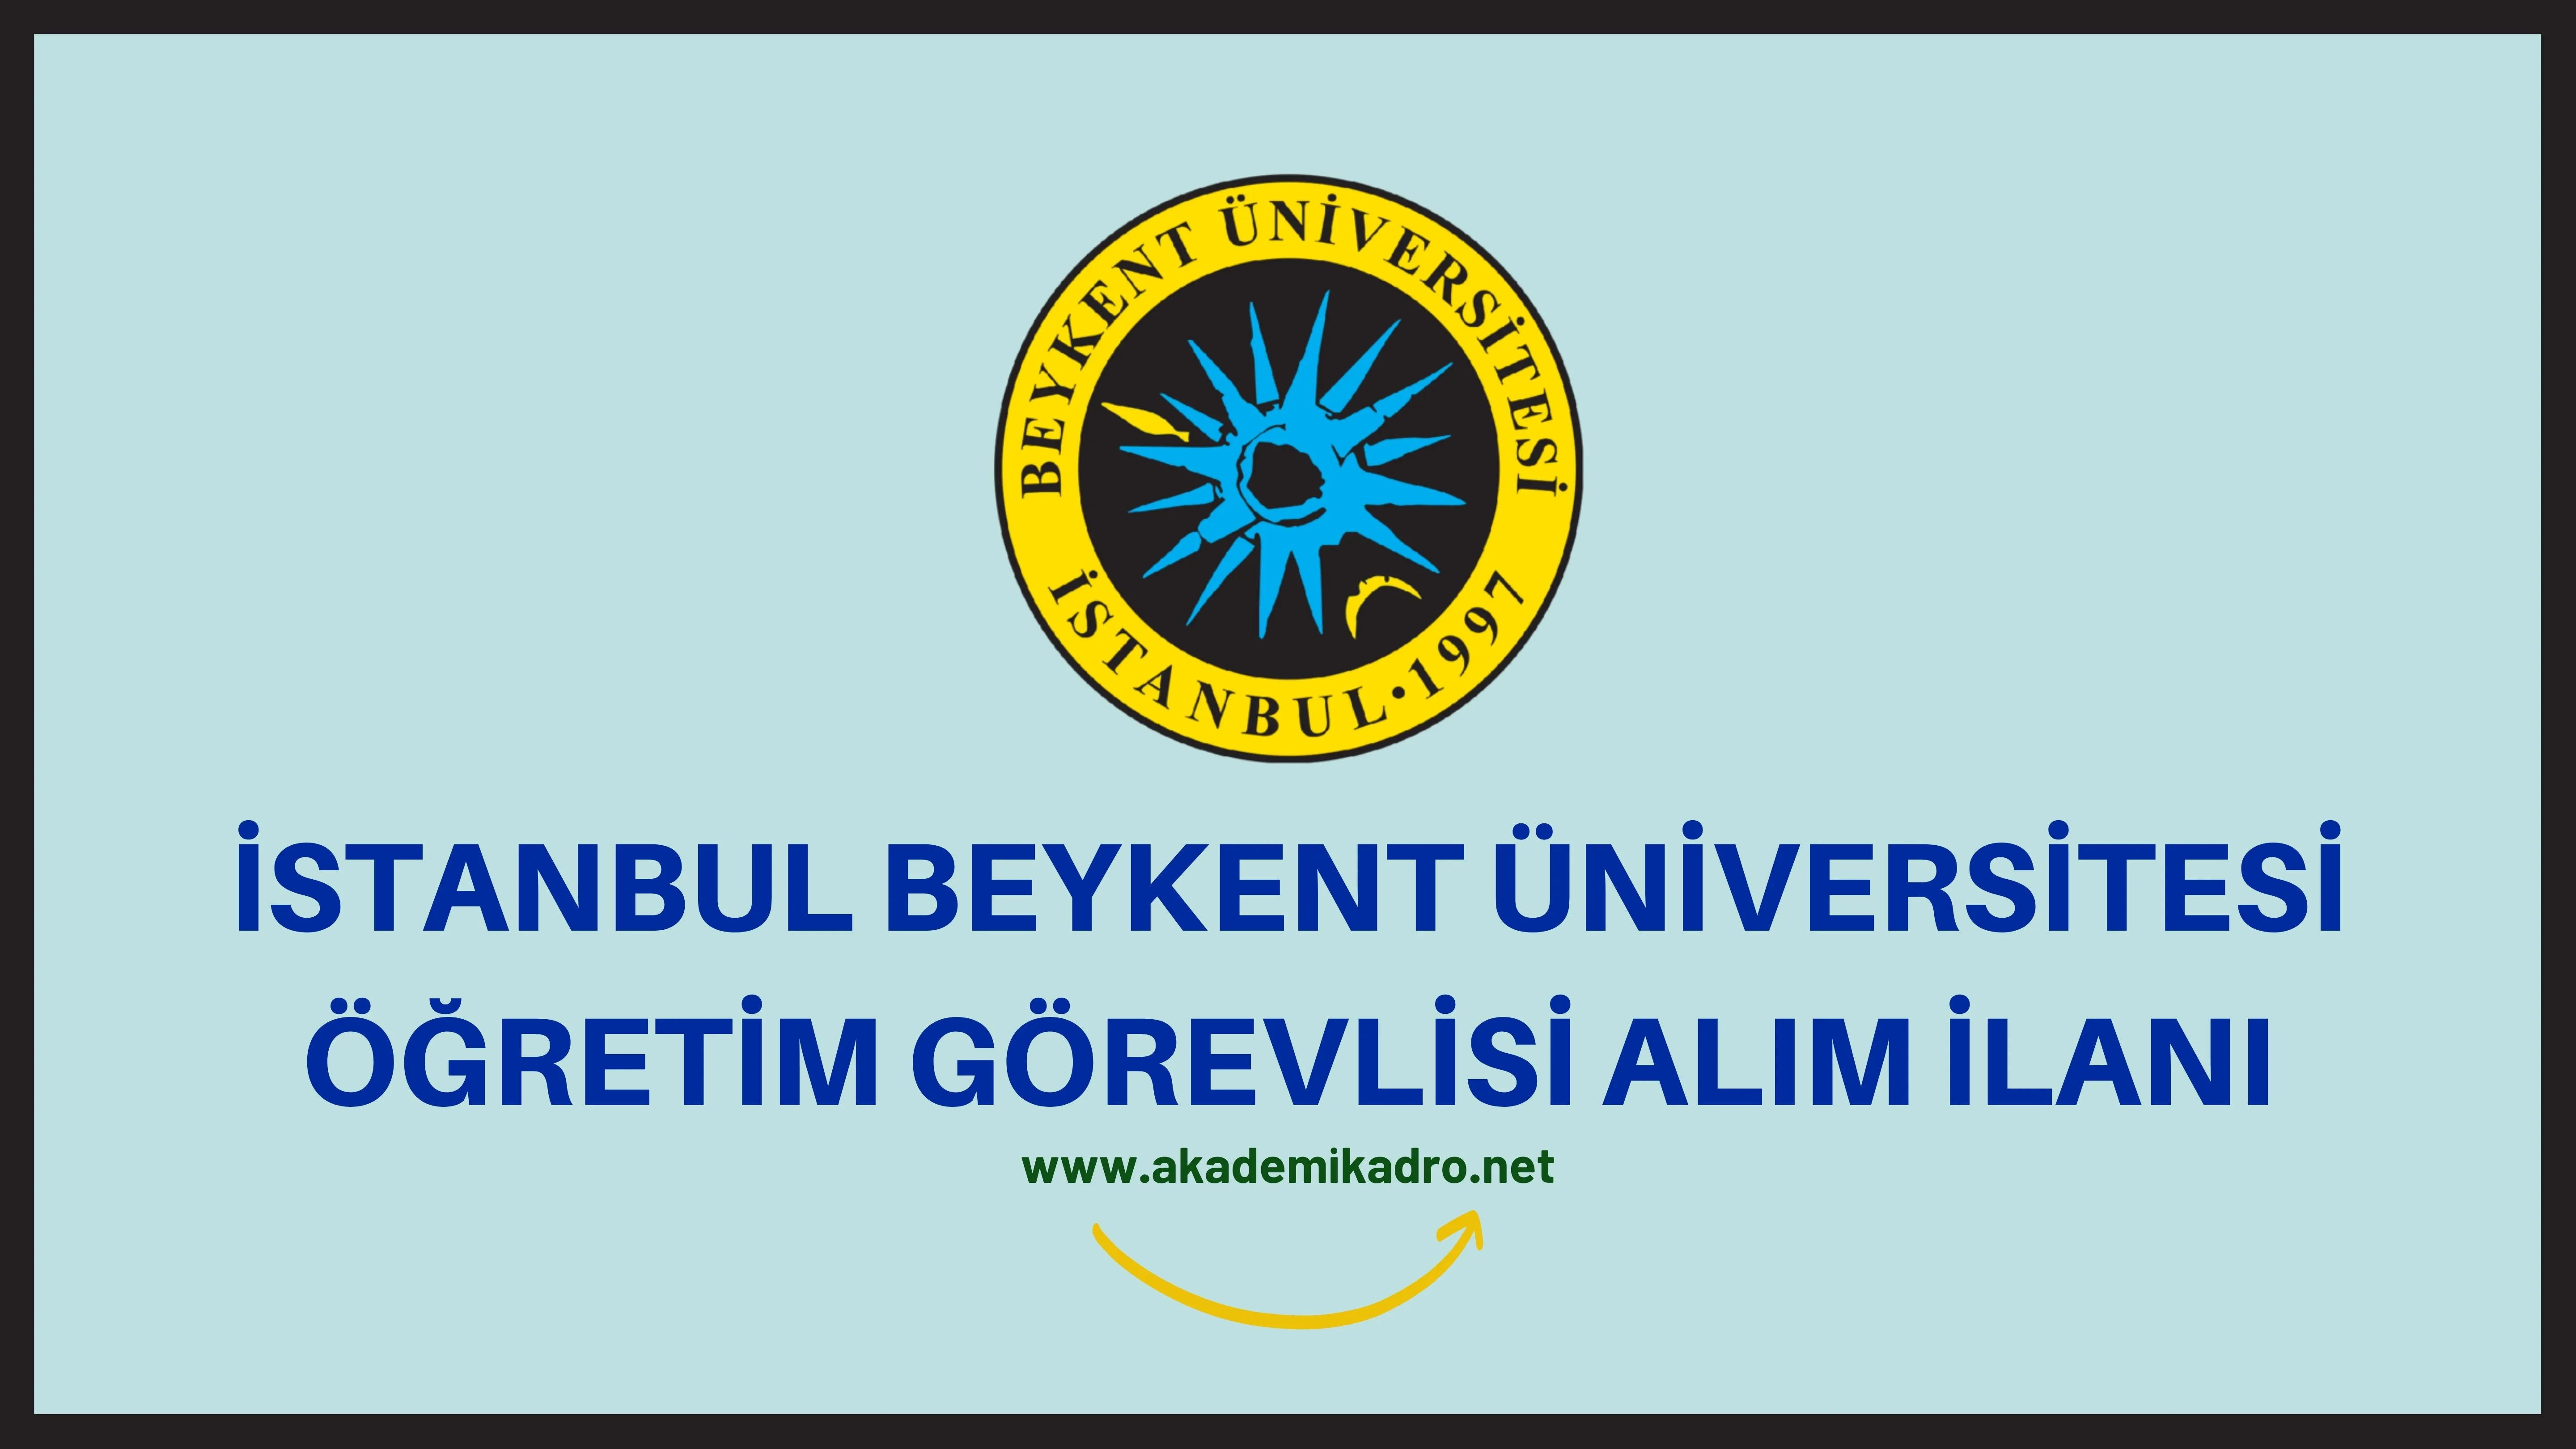 Beykent Üniversitesi 4 Öğretim Görevlisi alacak. Son başvuru tarihi 20 Eylül 2022